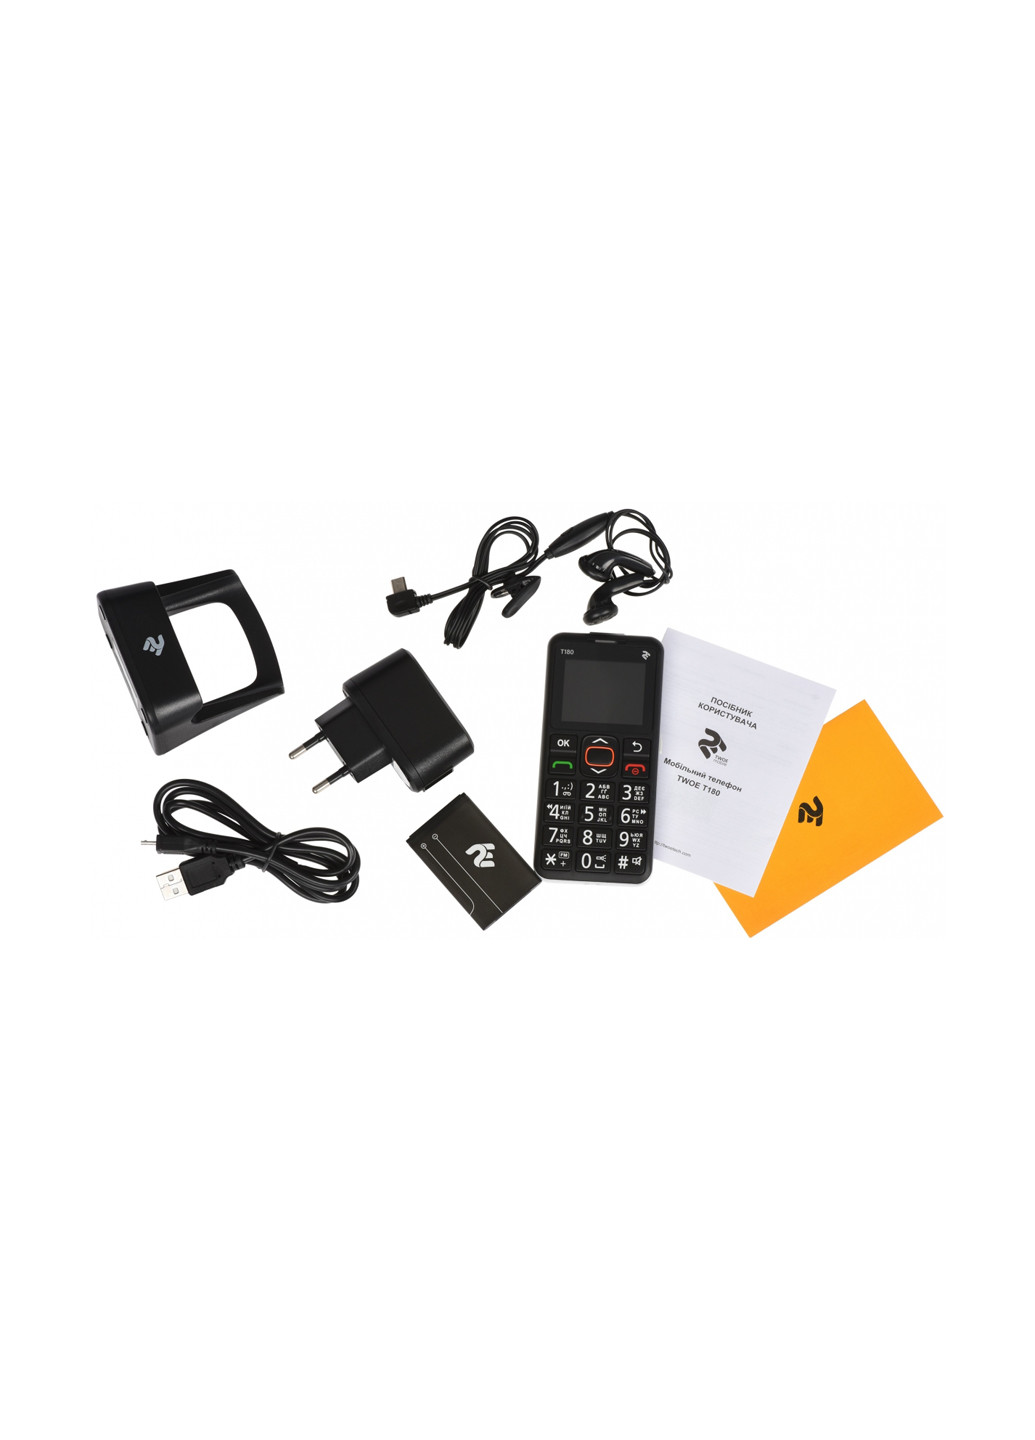 Мобильный телефон (708744071125) 2E 2E T180 SingleSim Black чёрный